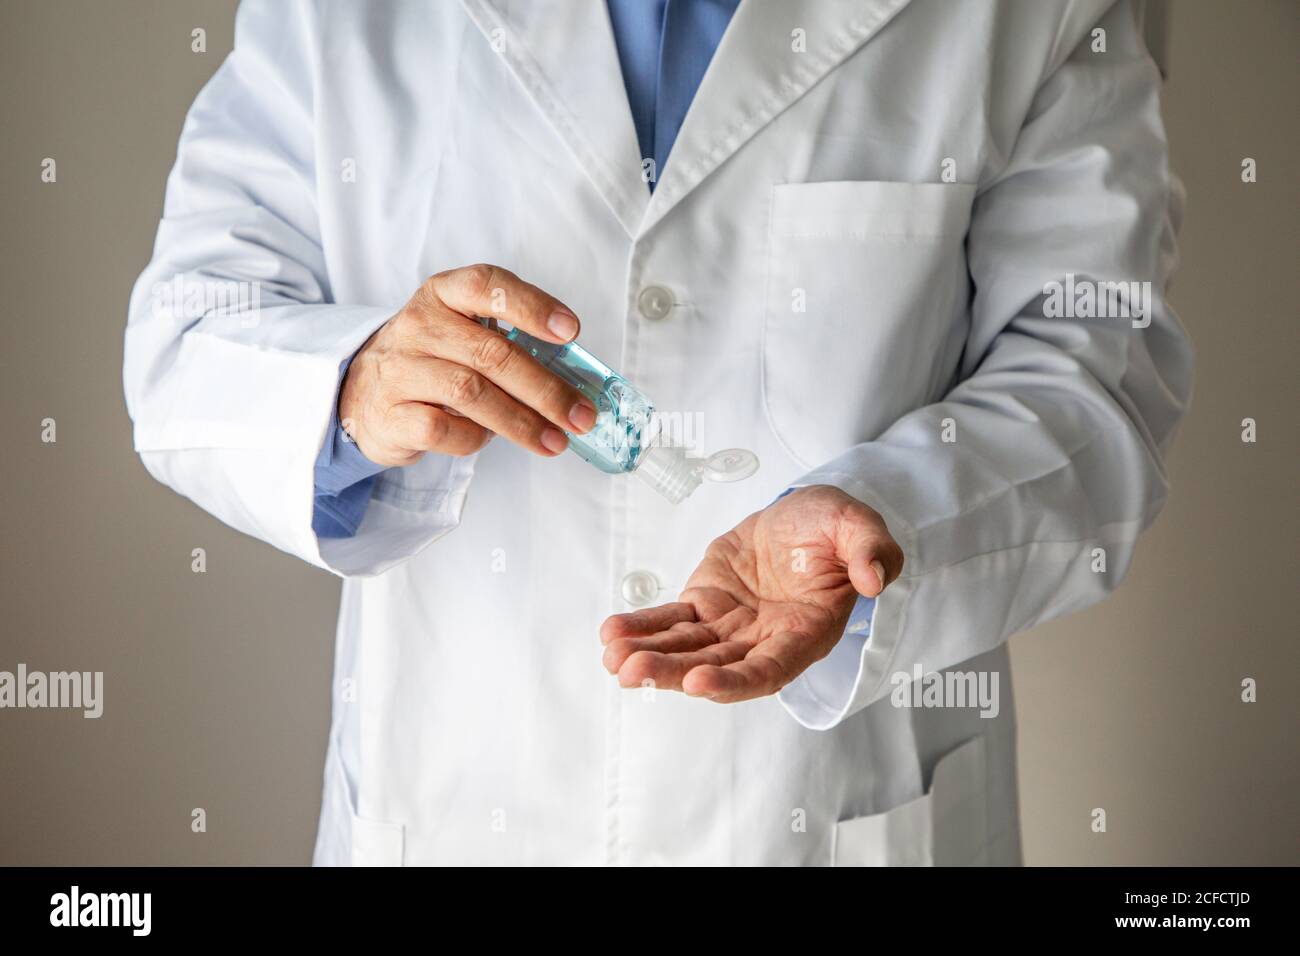 Crop masculino general practicante en bata médica aplicando gel antibacteriano para desinfectar las manos mientras está de pie sobre fondo gris en clínica durante la pandemia del coronavirus Foto de stock